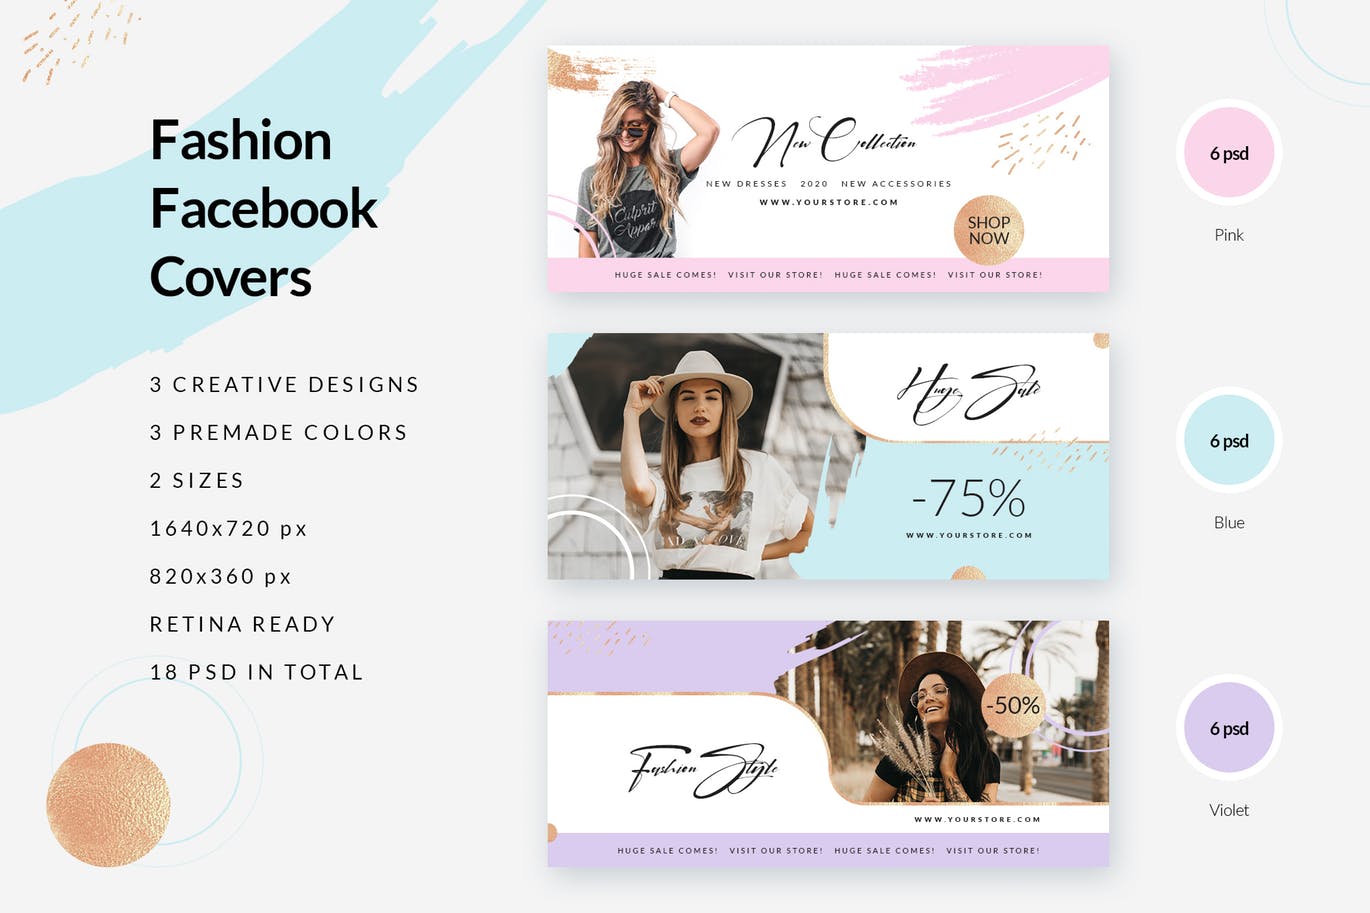 时尚品牌打折促销Facebook封面设计模板素材库精选 Fashion Facebook Covers插图